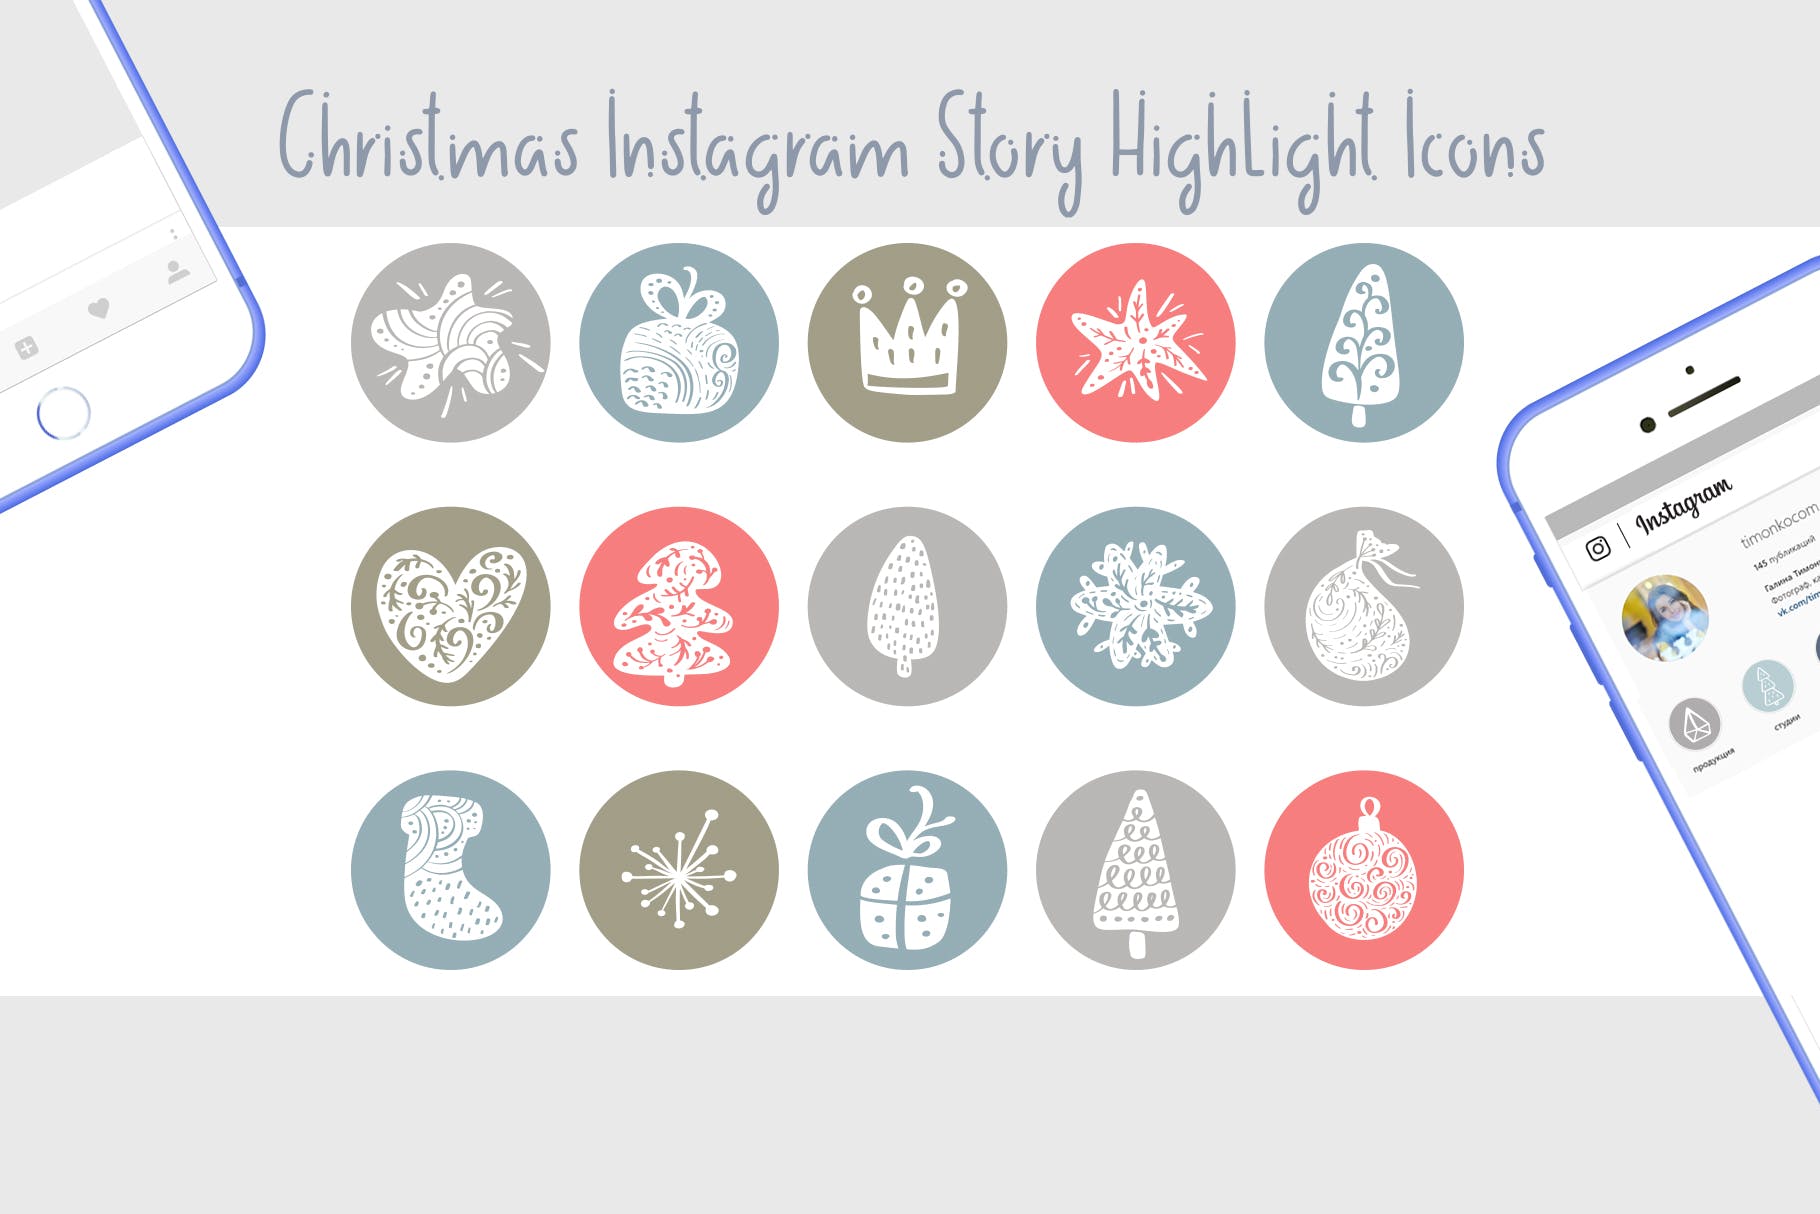 圣诞节主题矢量手绘非凡图库精选图标素材 Christmas Instagram highlight story icons插图(1)